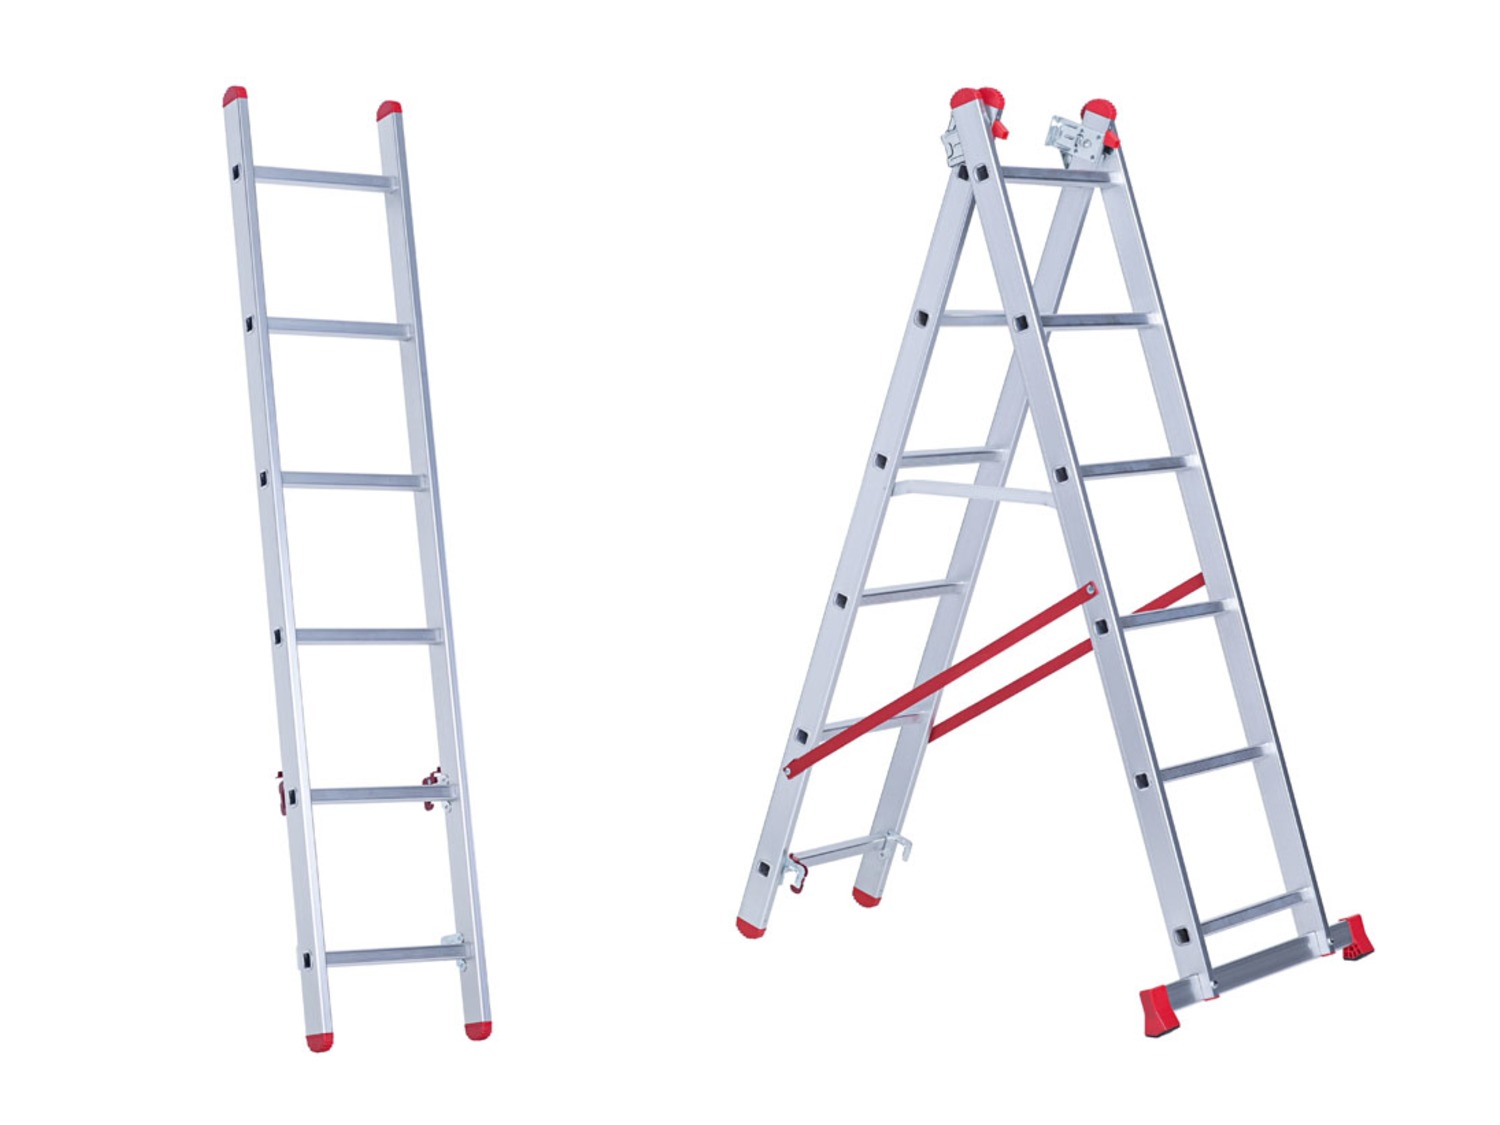 Carrière Gespierd Of later POWERFIX Multifunctionele ladder | Lidl.be